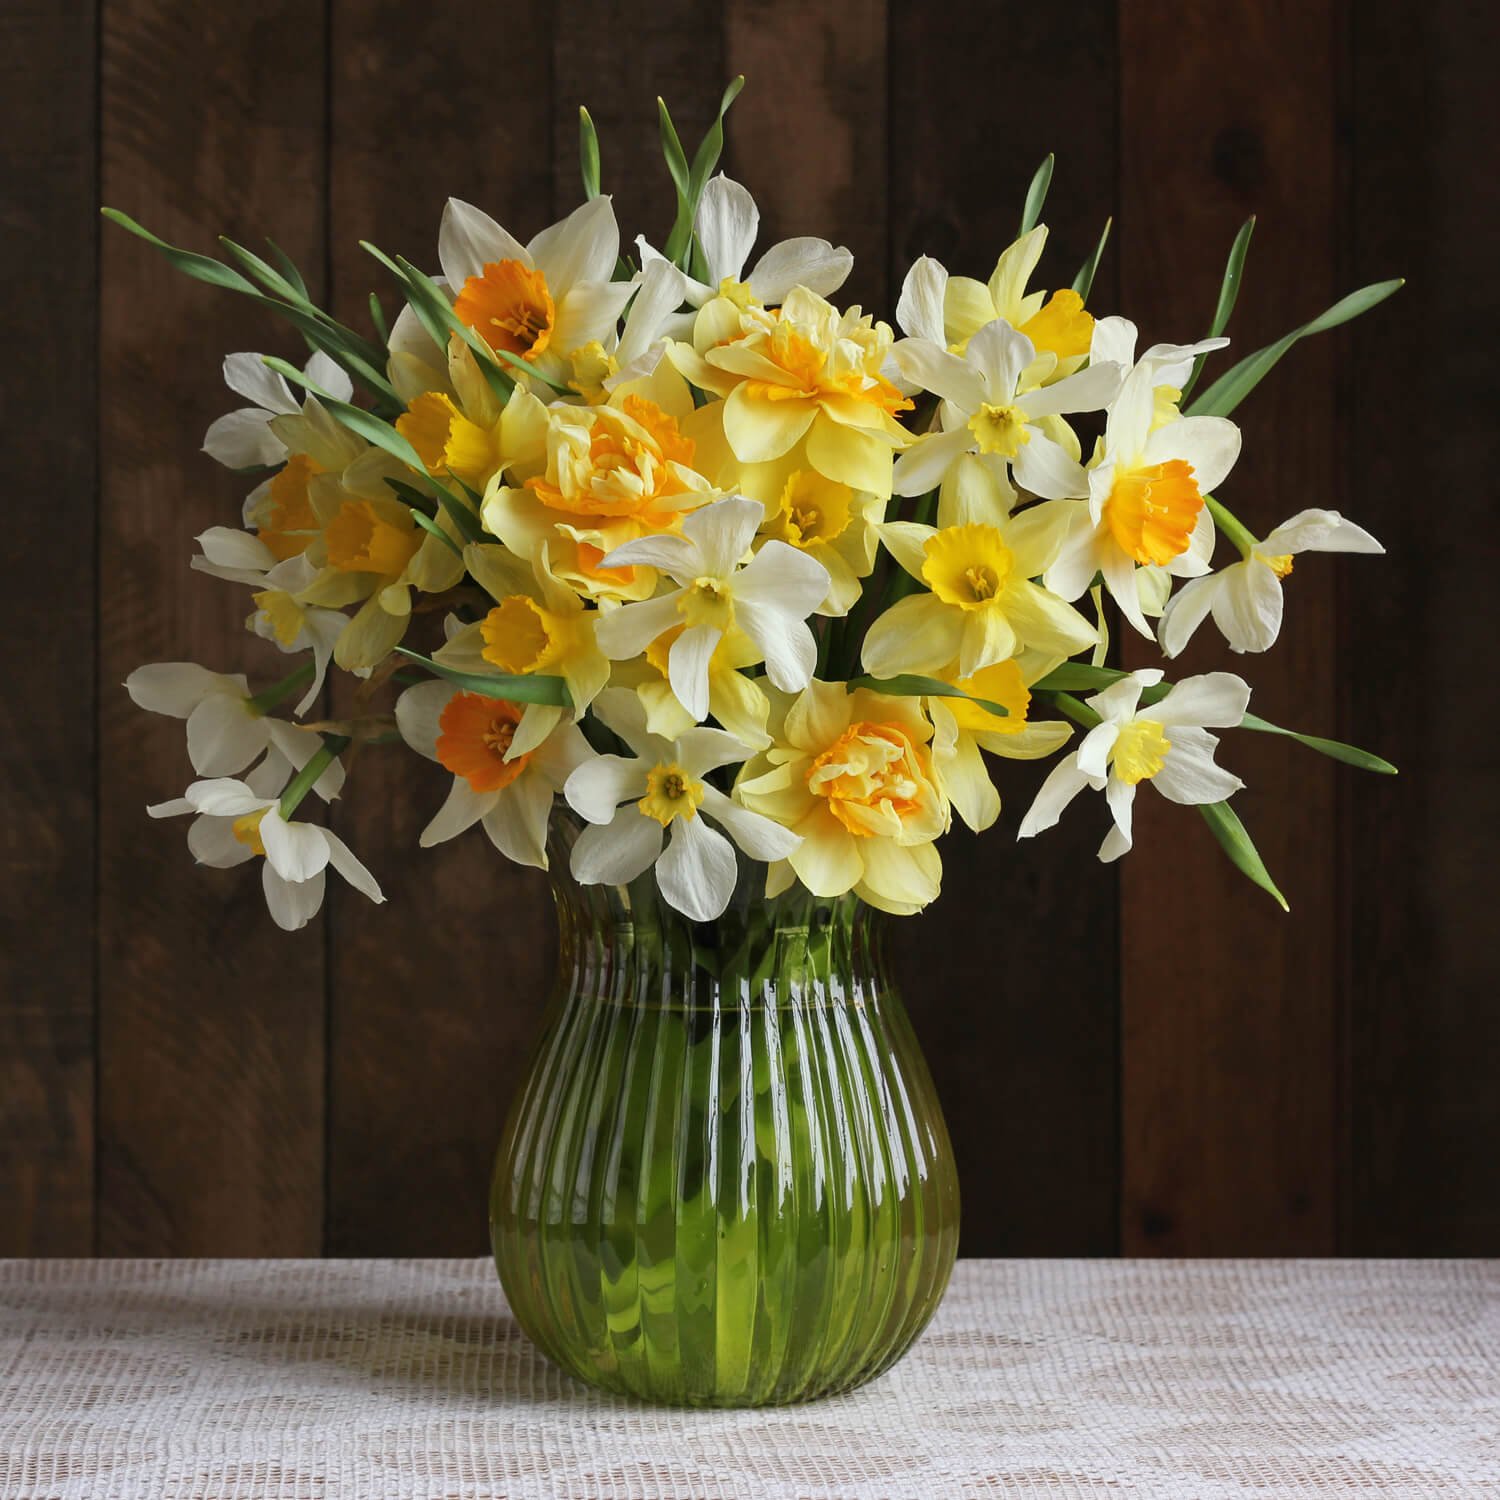 Dafodils Spring Flowers Vase.jpg